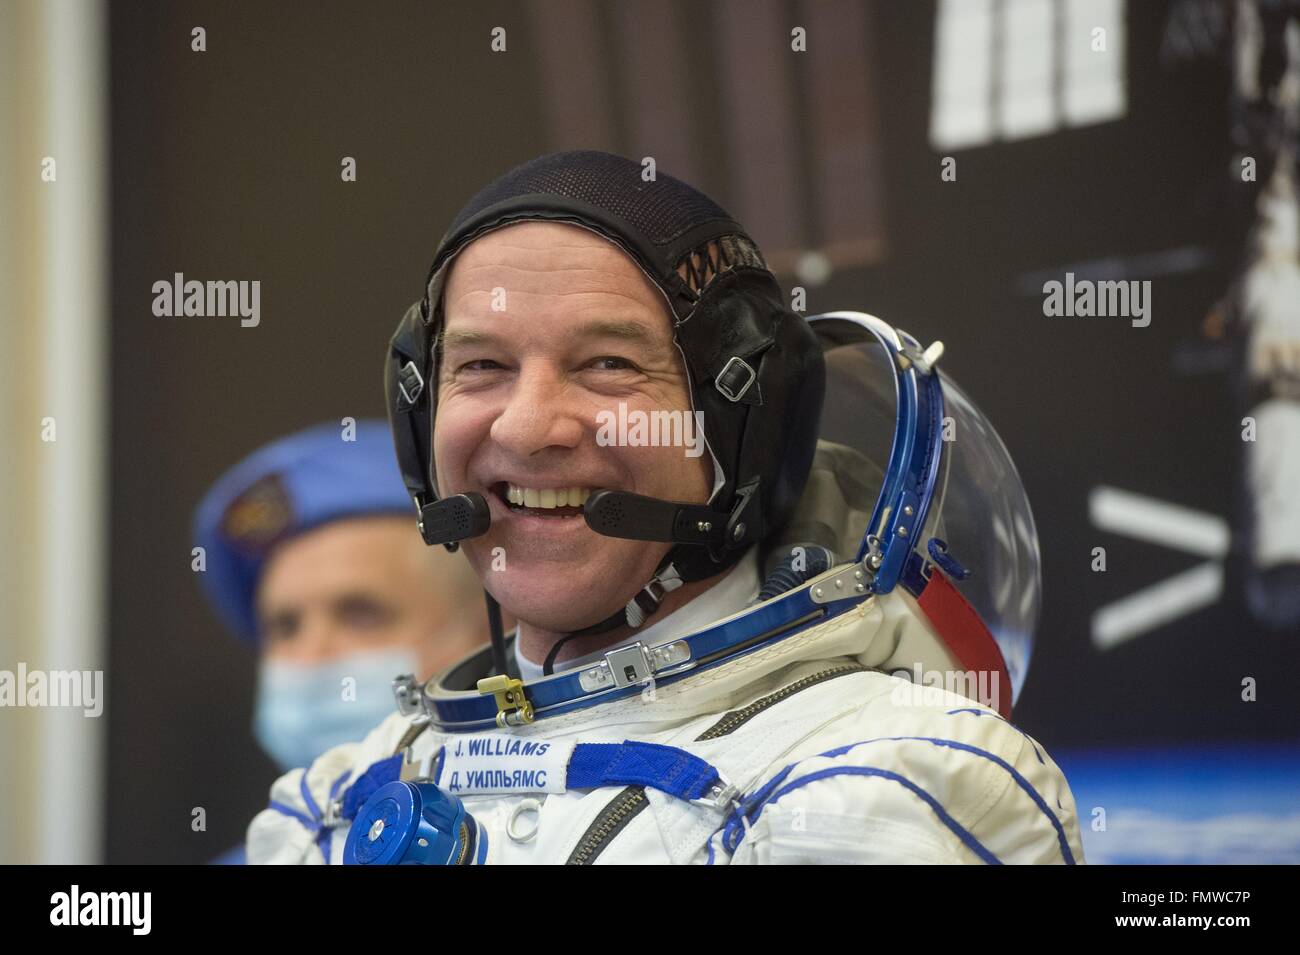 Stazione Spaziale Internazionale Expedition 47 astronauta Jeff Williams della NASA durante il controllo di tenuta della sua Sokol tuta di lancio presso il cosmodromo di Baikonur il 4 marzo 2016 in Kazakistan. L'equipaggio sono programmati per il lancio su un periodo di sei mesi di missione per la stazione su Marzo 19th. Foto Stock